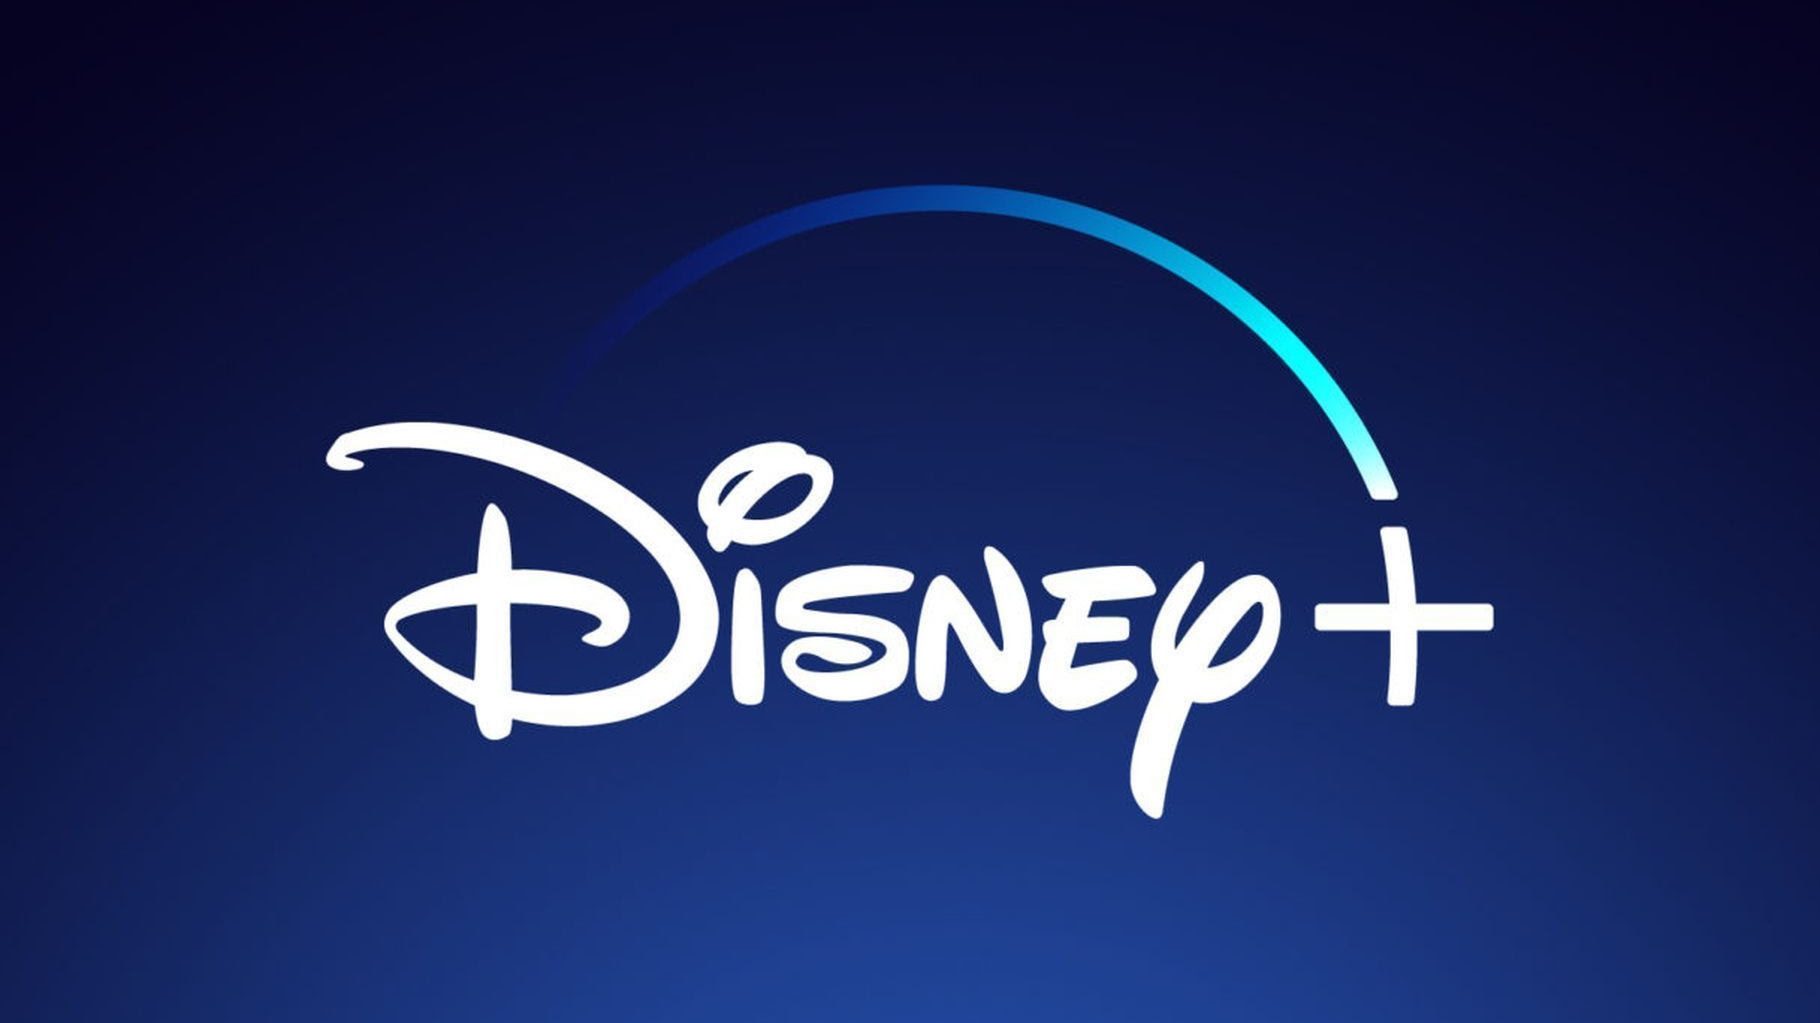 Disney+ evento cancellato a causa del Coronavirus thumbnail